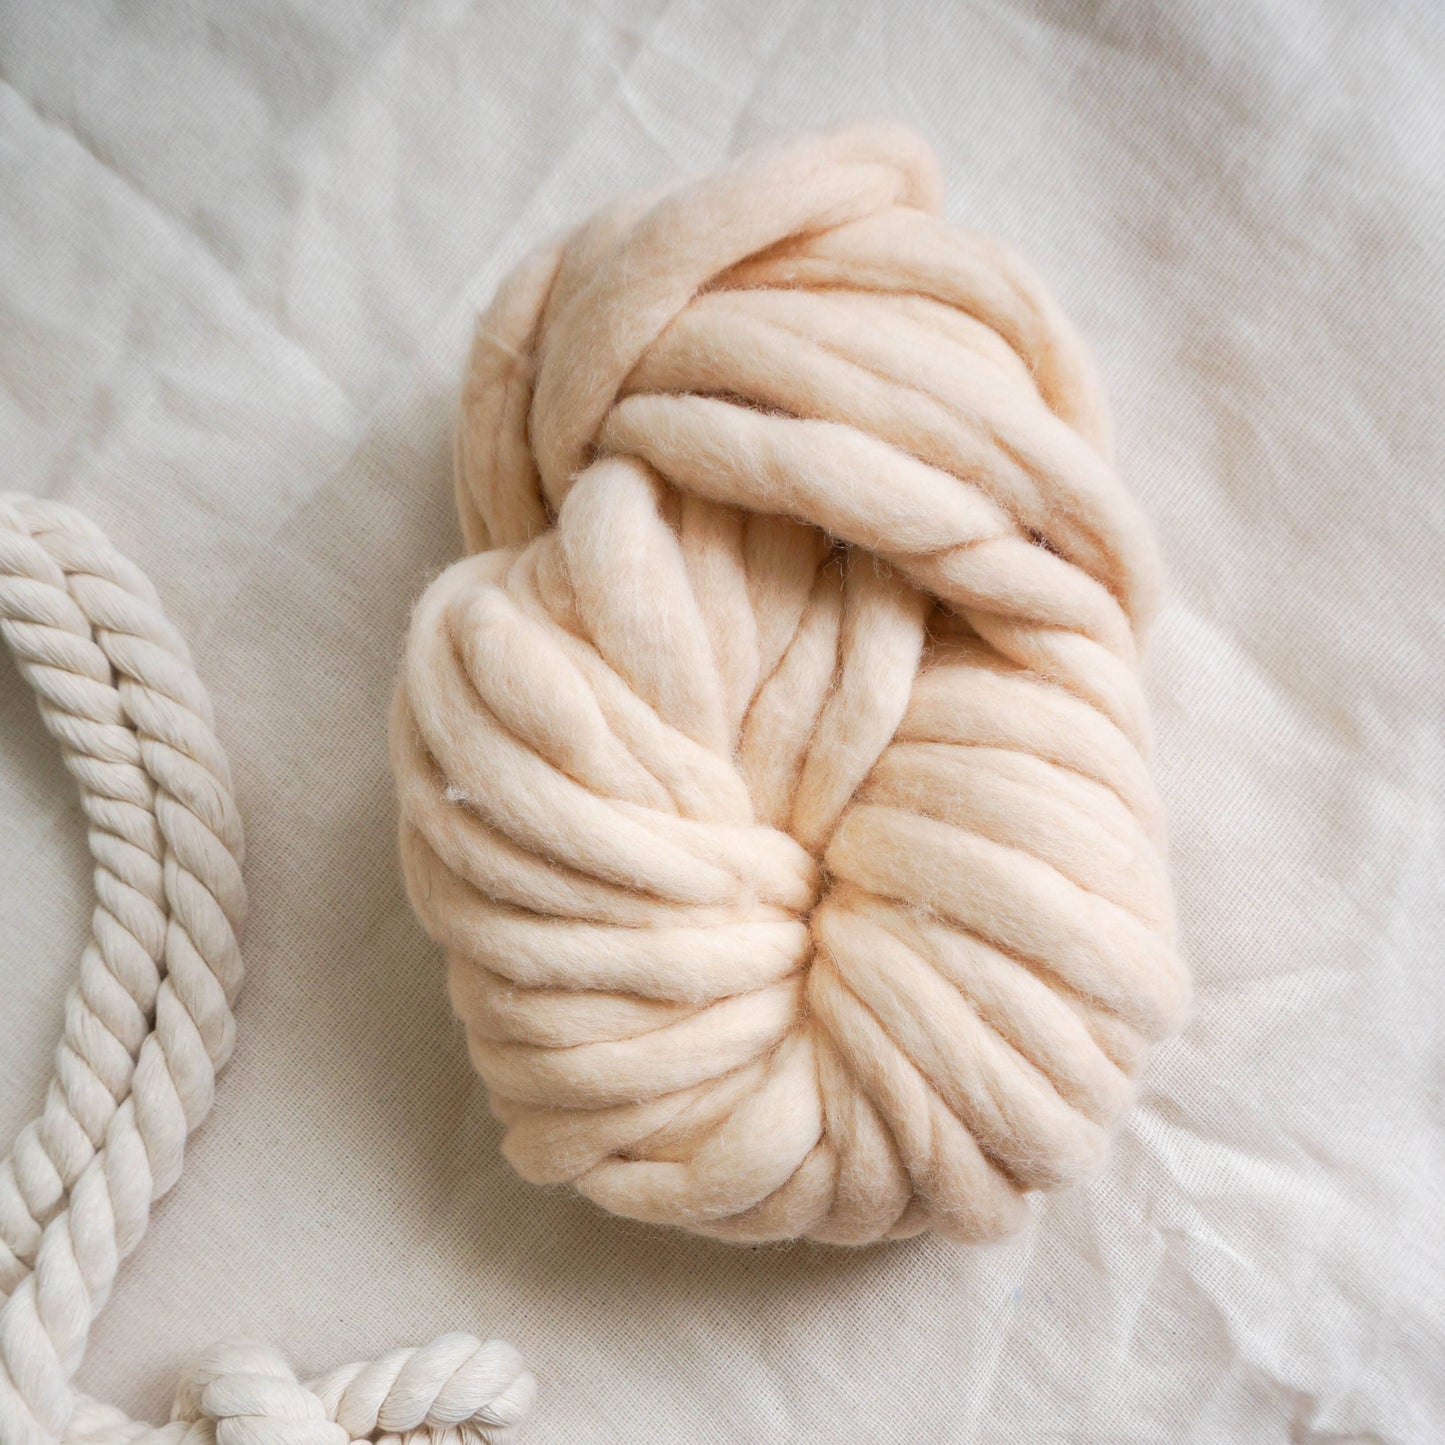 Sinchi Yarn 100gr, 100 % Peruvian wool, super chunky 100gr - Melon